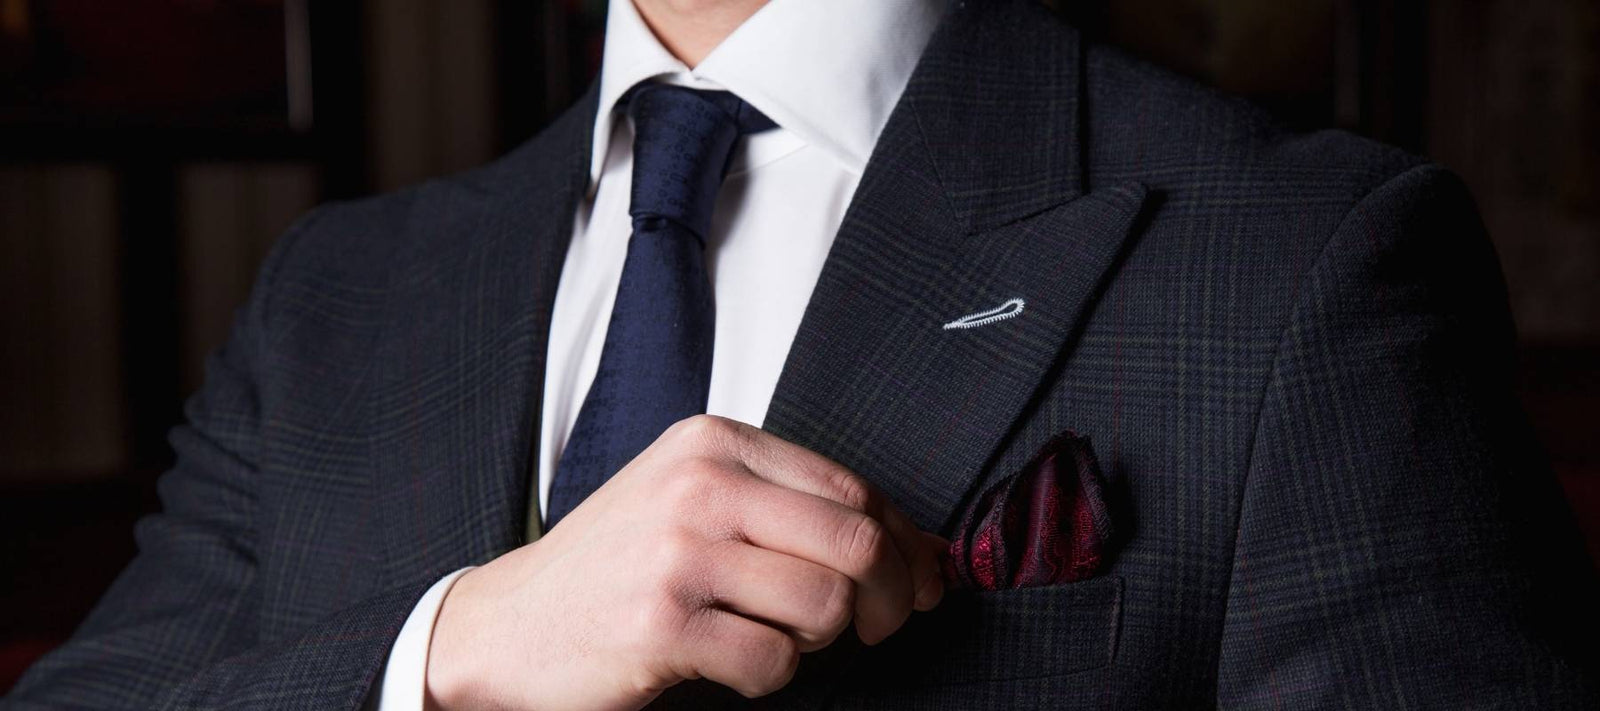 Le guide de la cravate : Comment assortir assortir sa cravate ?